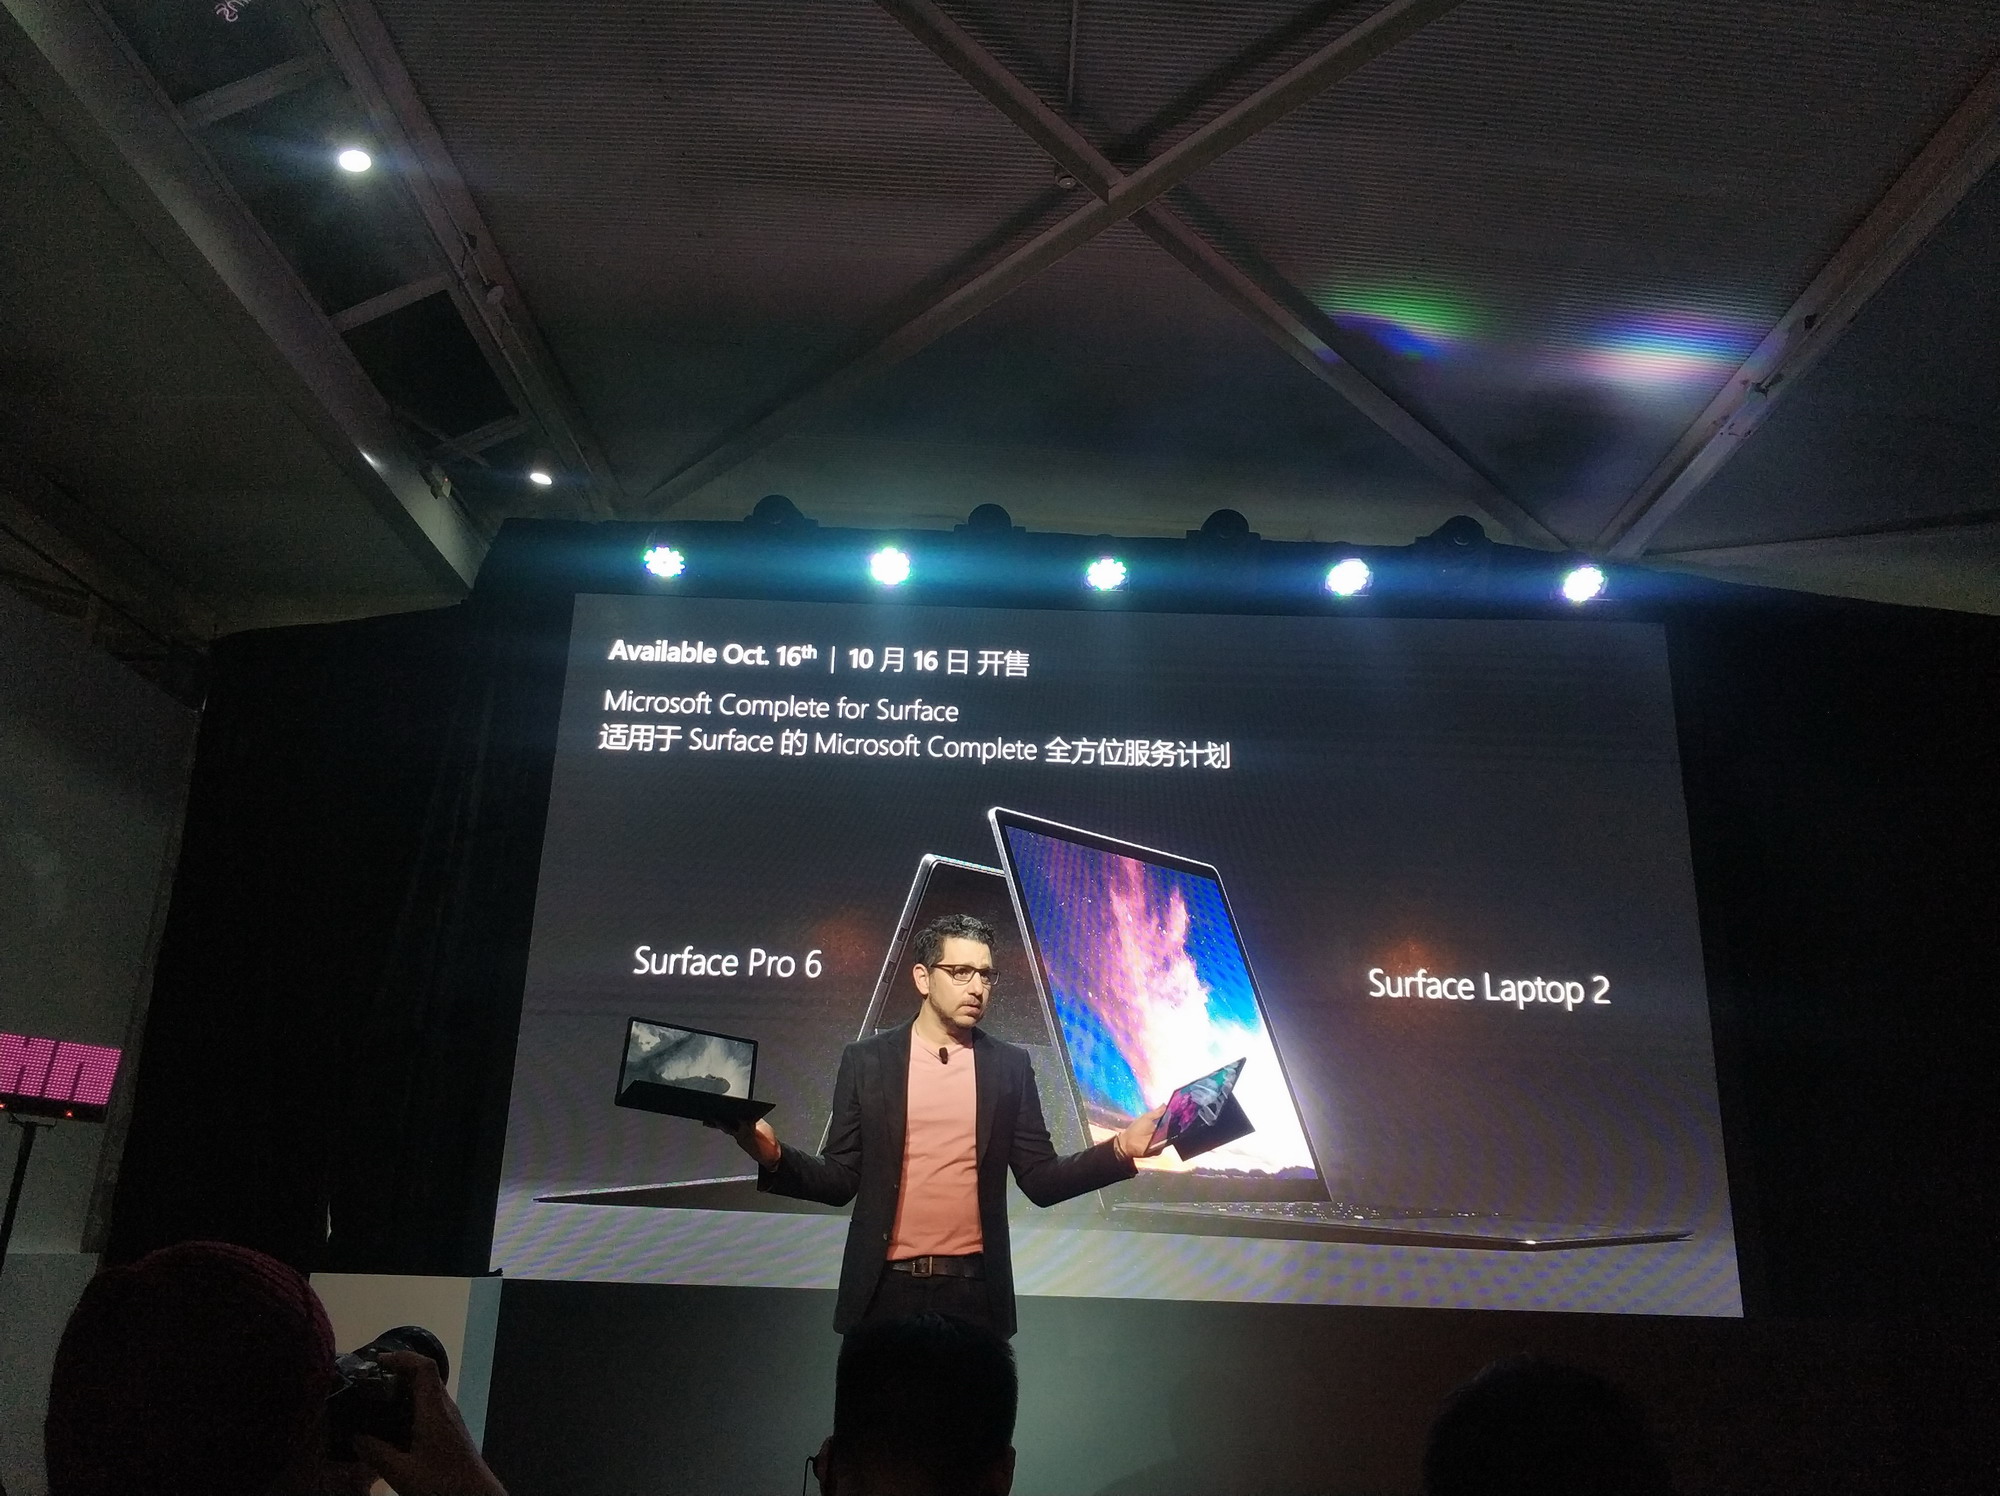 微硬Surface Pro 6/Laptop 2国止版明相 卖价7188元起